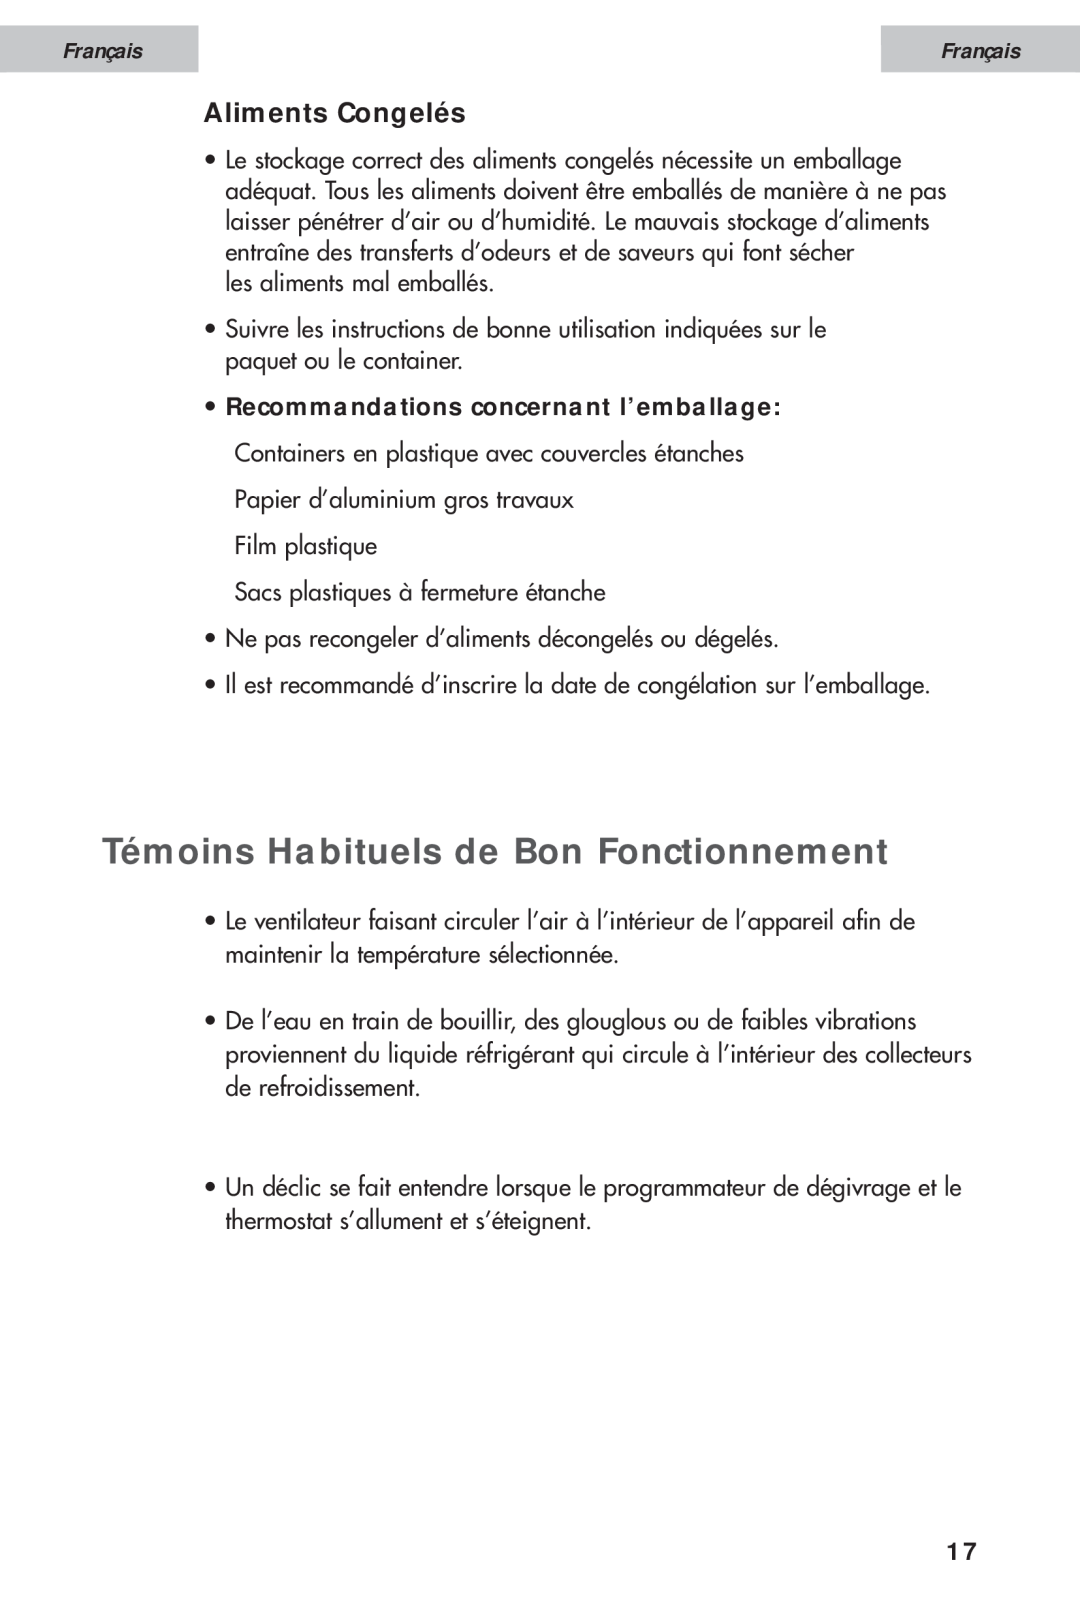 Haier HDE11WNA, HDE10WNA user manual Témoins Habituels de Bon Fonctionnement, Aliments Congelés, Français 